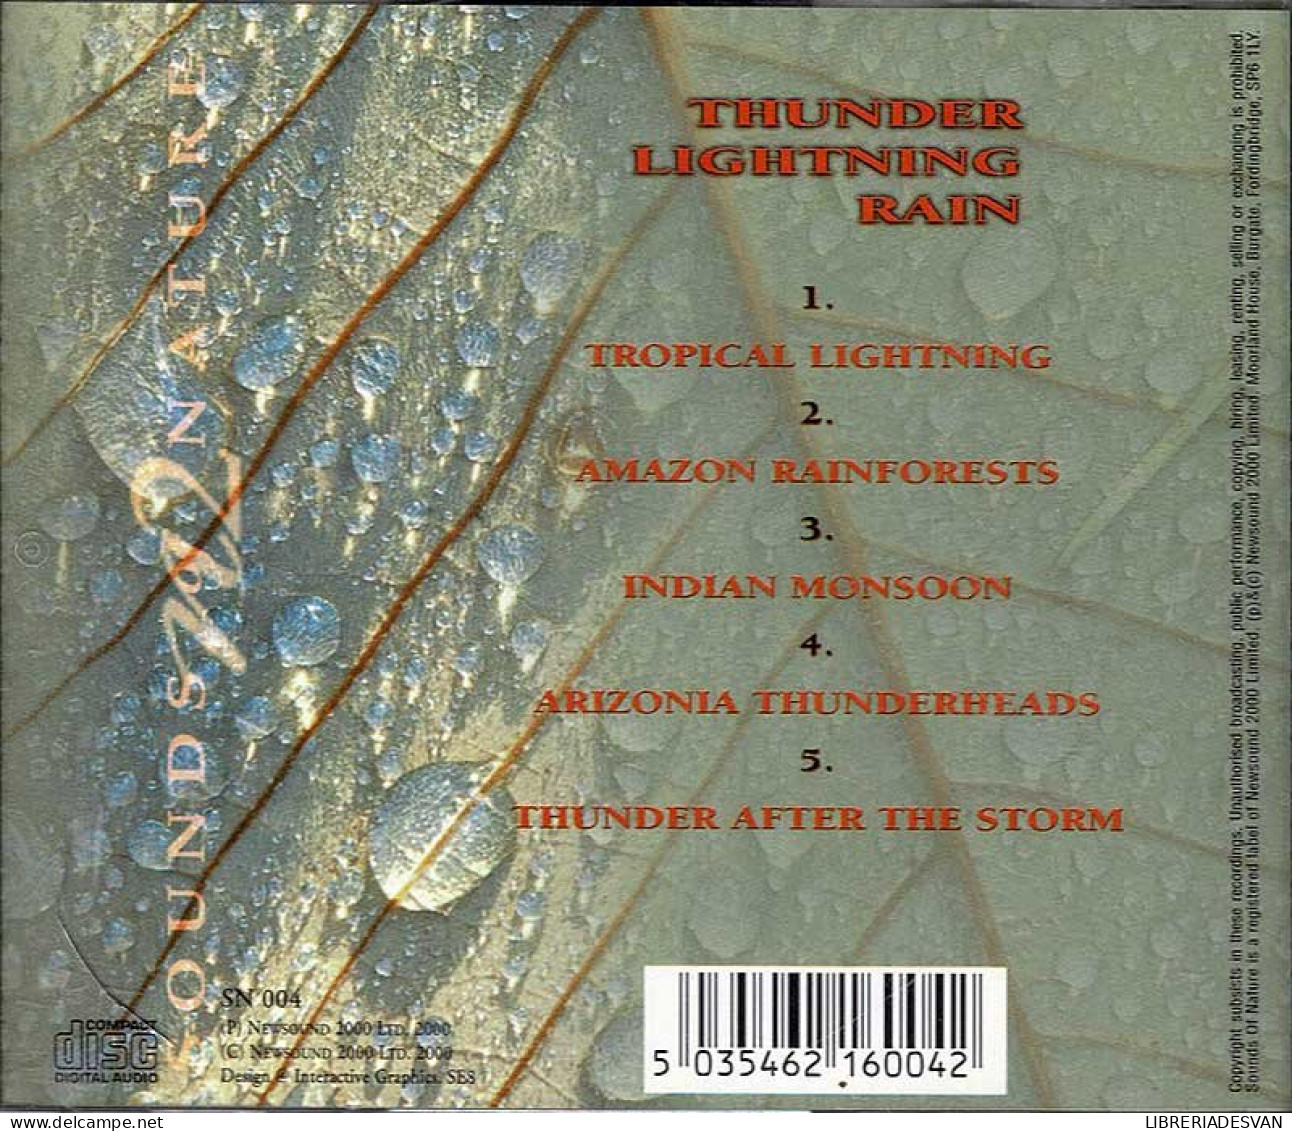 Paul Rayner-Brown - Thunder Lightning Rain. CD - New Age